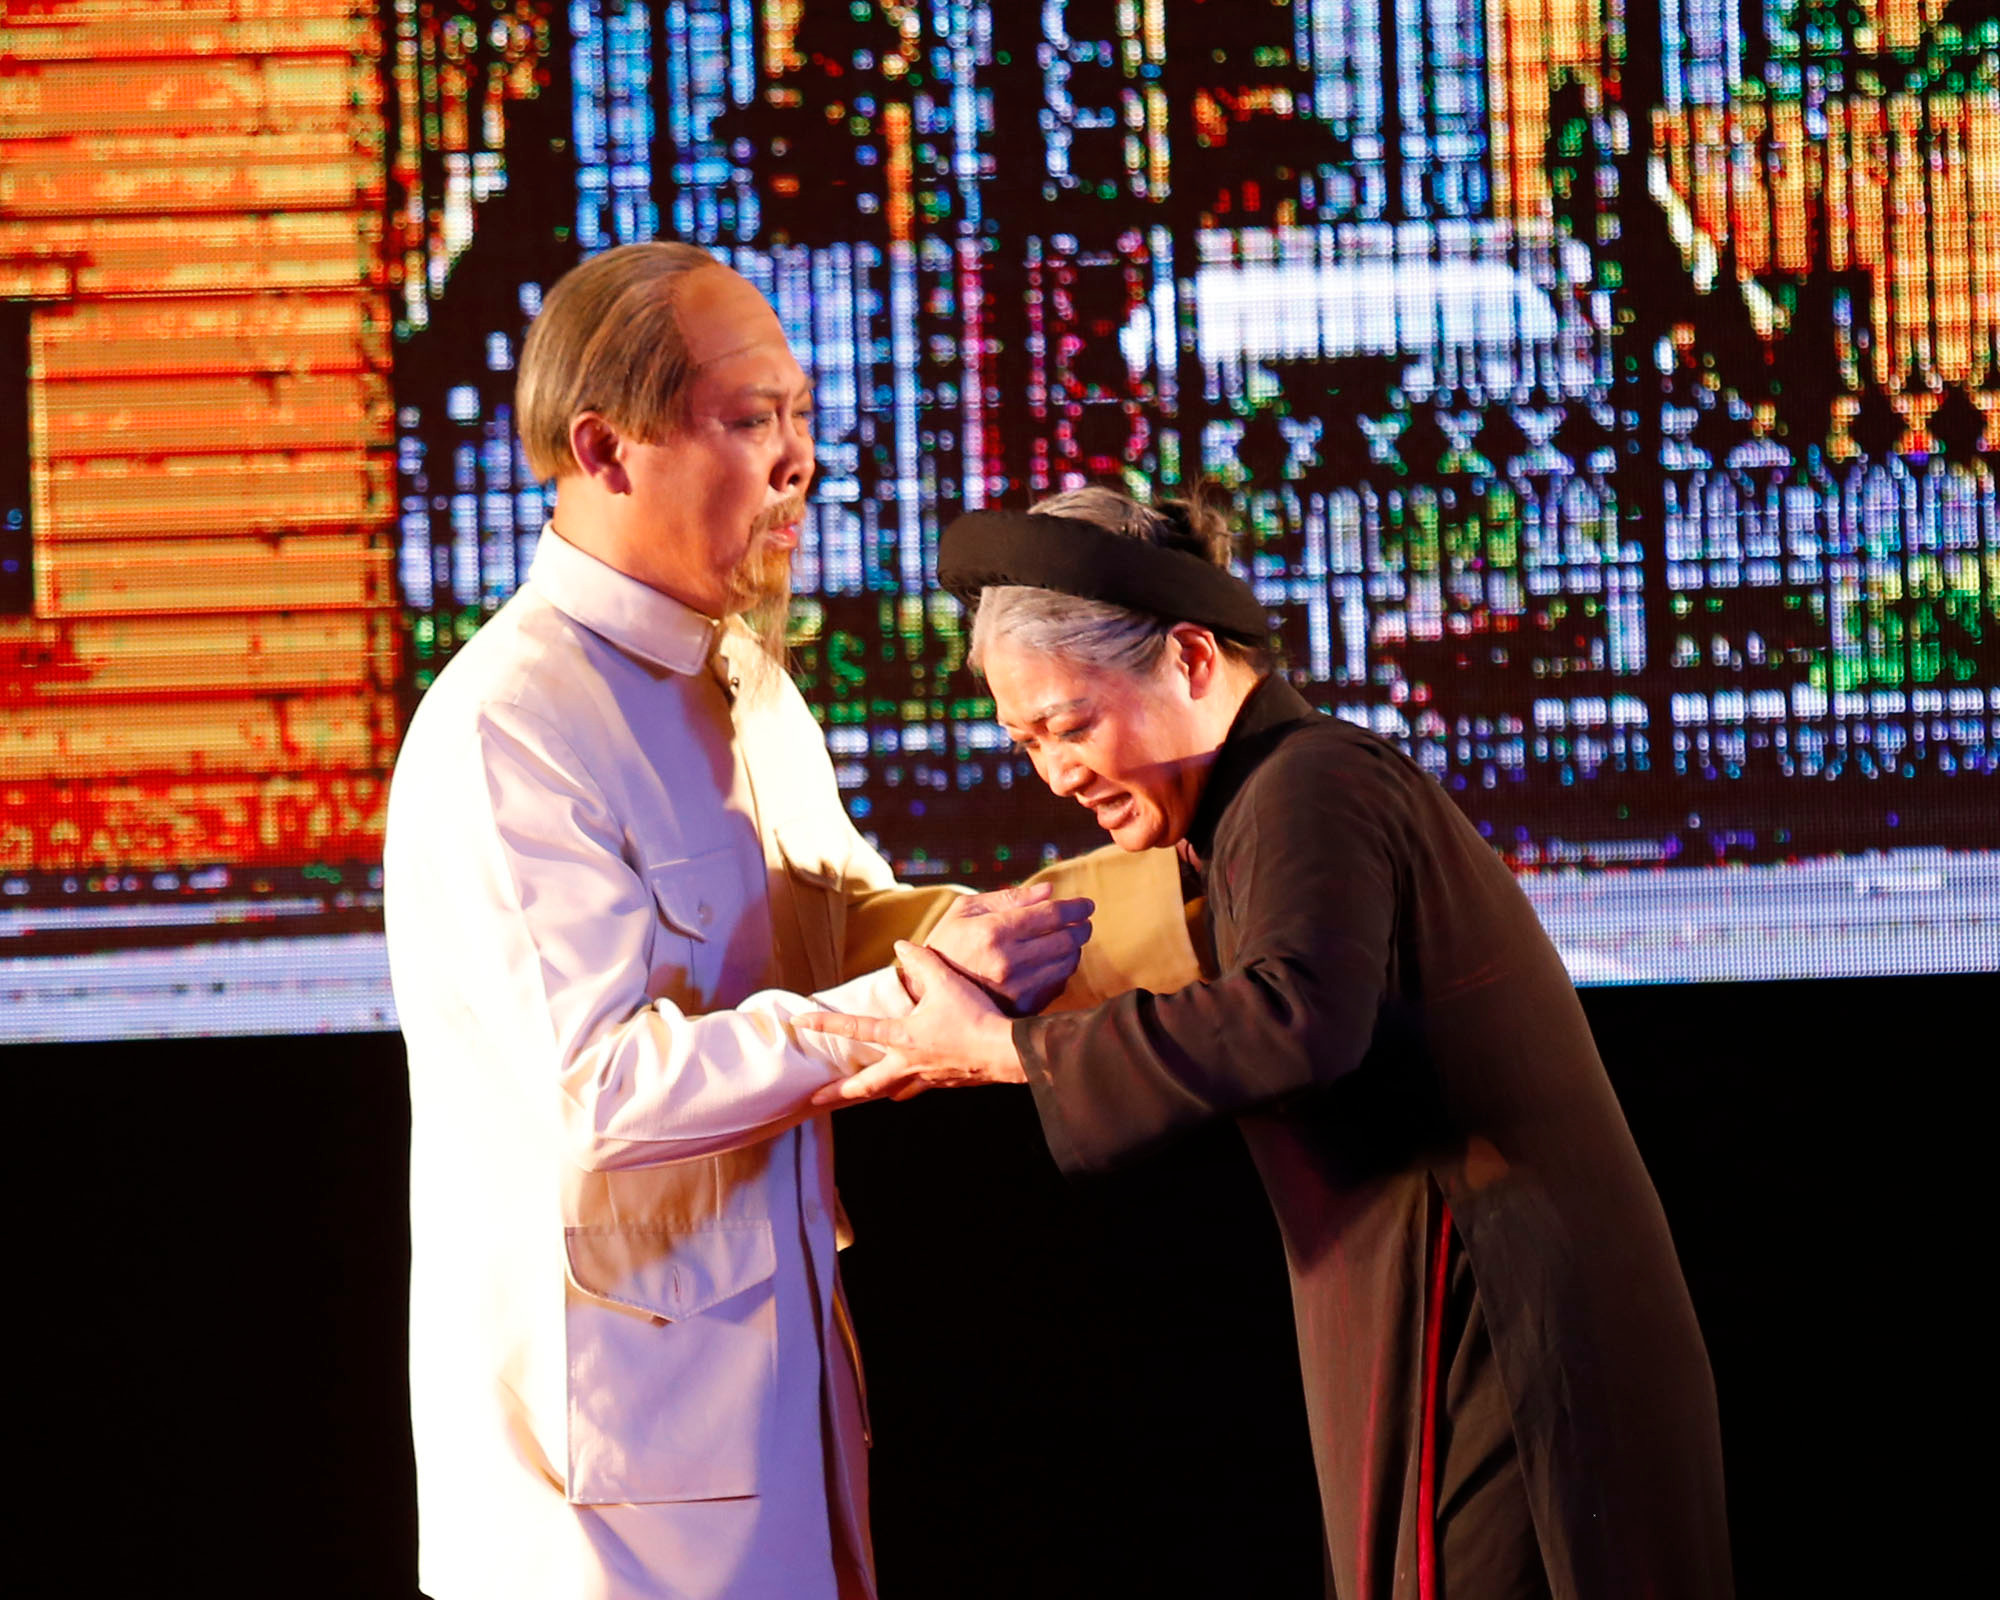 Một cảnh trong vở kịch miêu tả cuộc gặp gỡ giữa Bác Hồ và chị gái Nguyễn Thị Thanh sau hơn 40 năm xa cách. Ảnh: Đức Anh